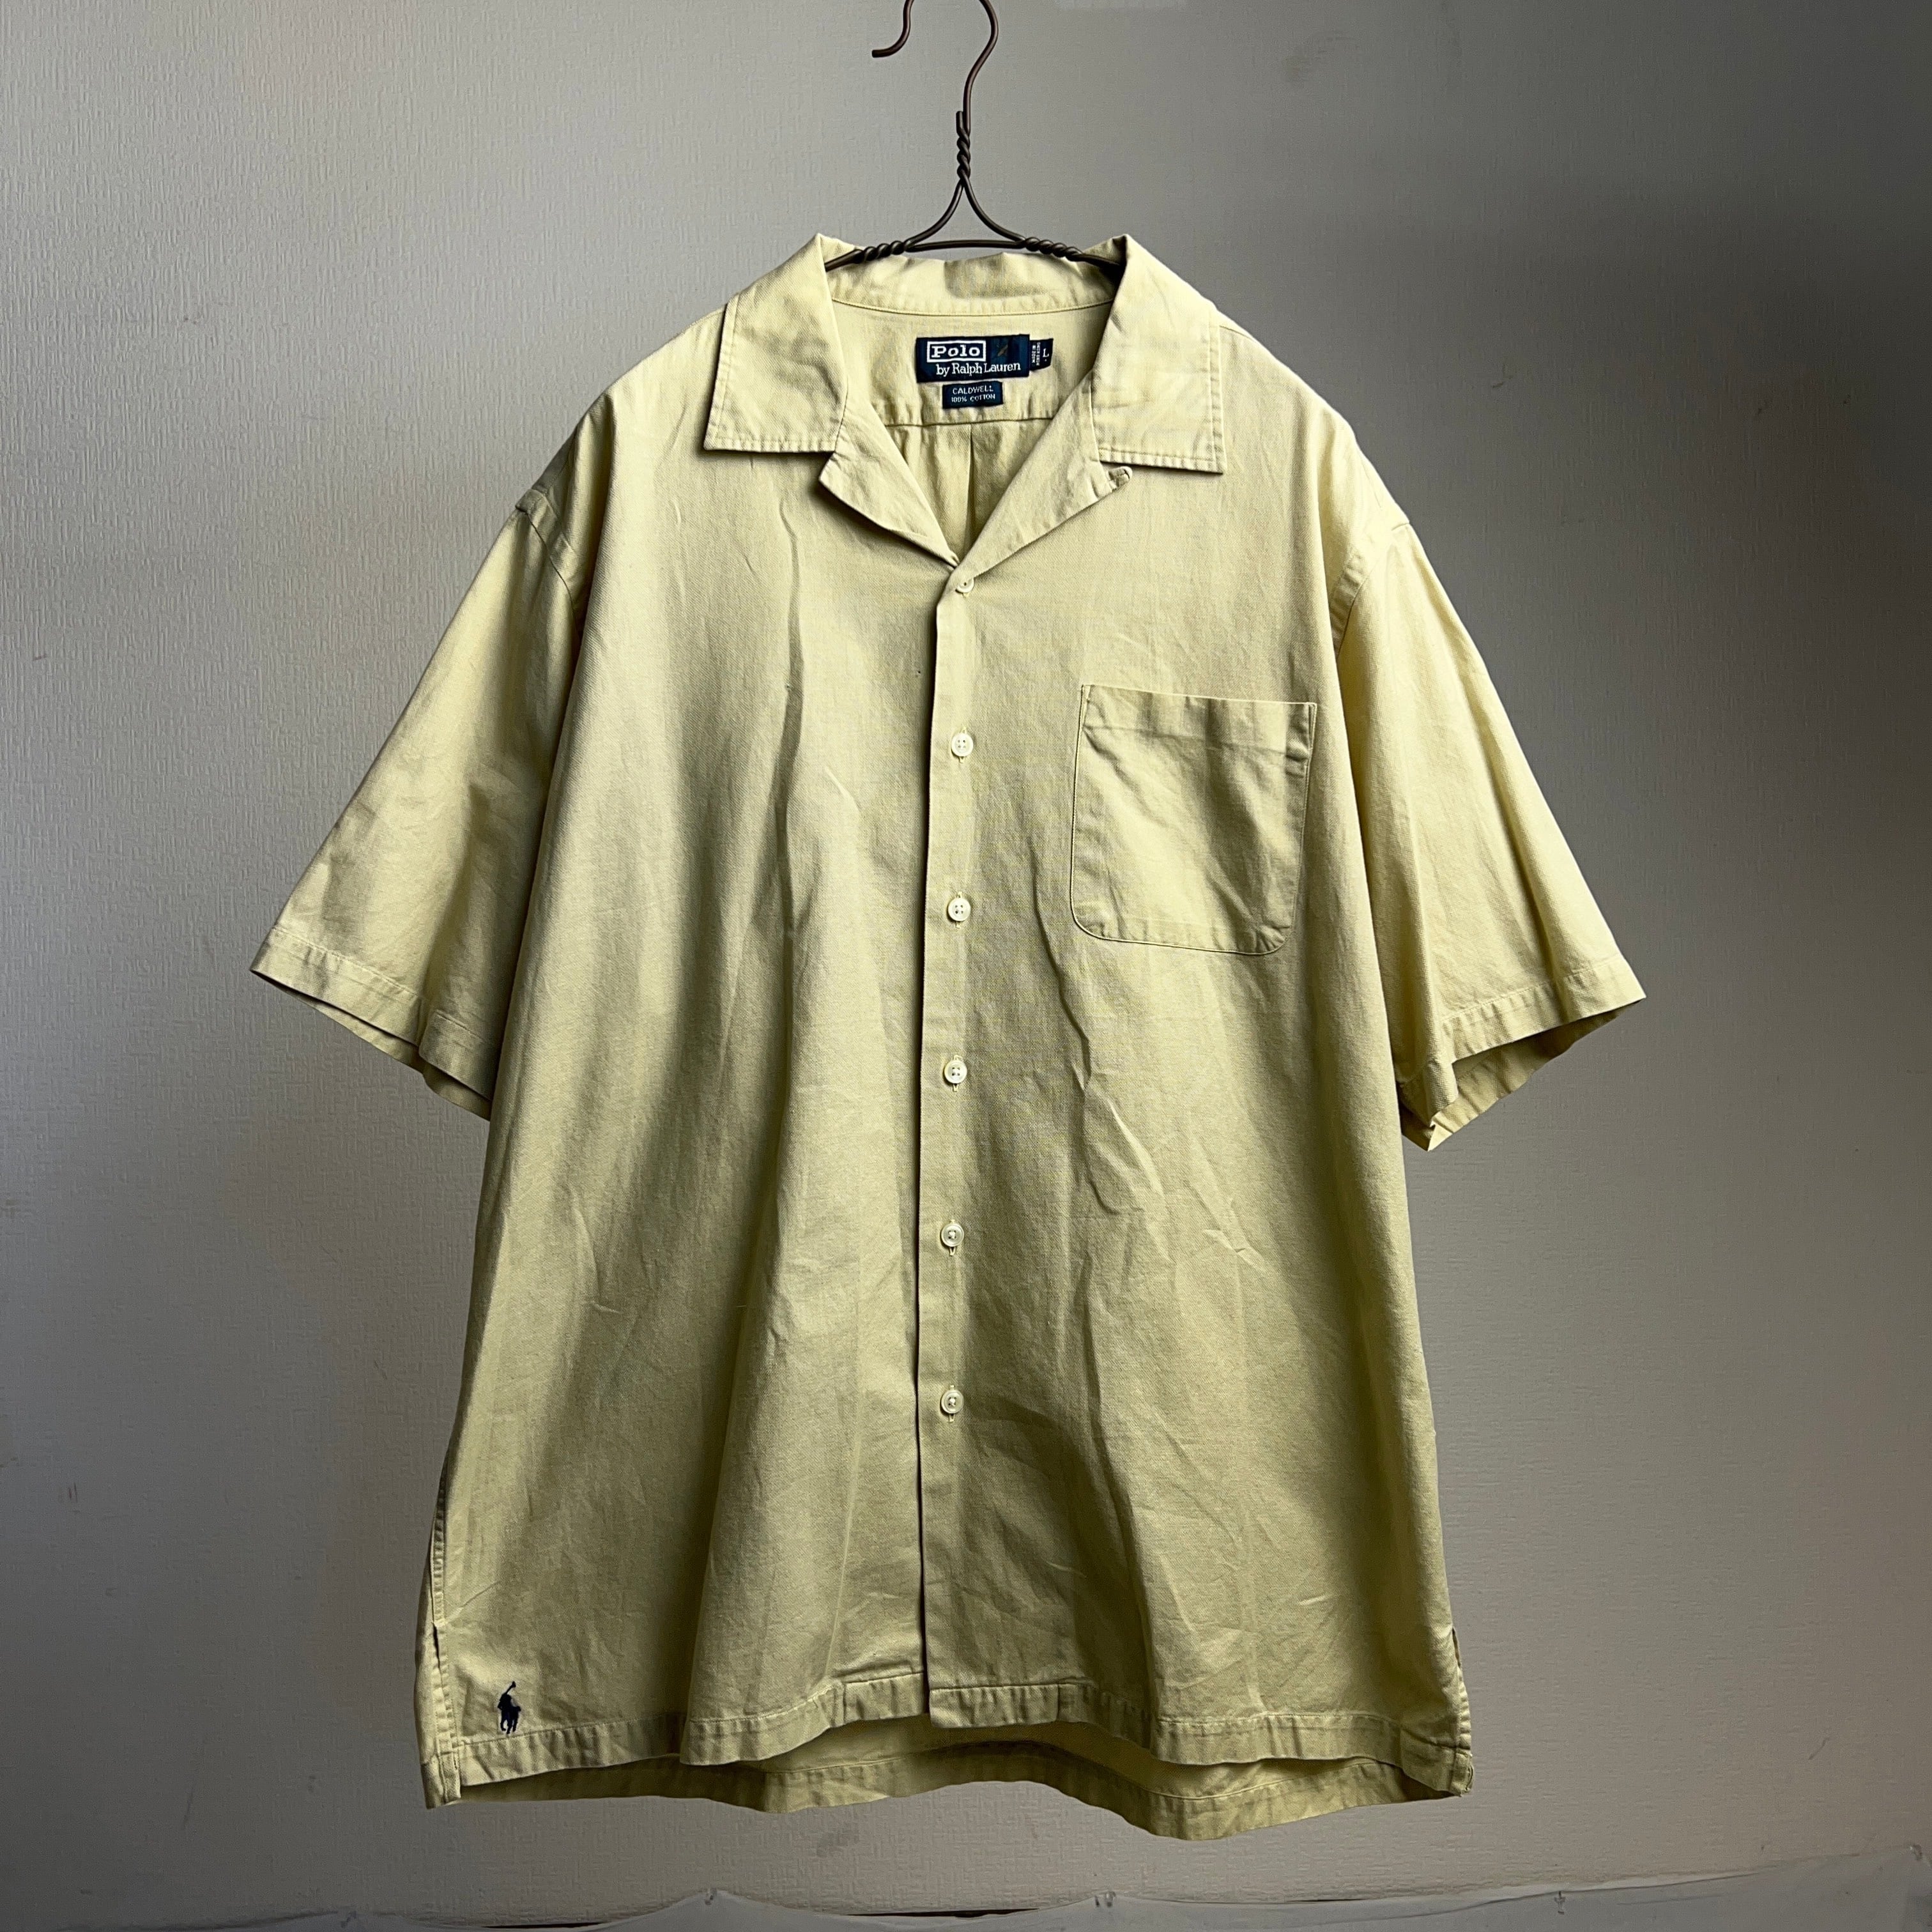 90's “Polo Ralph Lauren” CALDWELL S/S SHIRT SIZE L ラルフローレン コールドウェル  オープンカラーシャツ 90年代【0801A31】【送料無料】